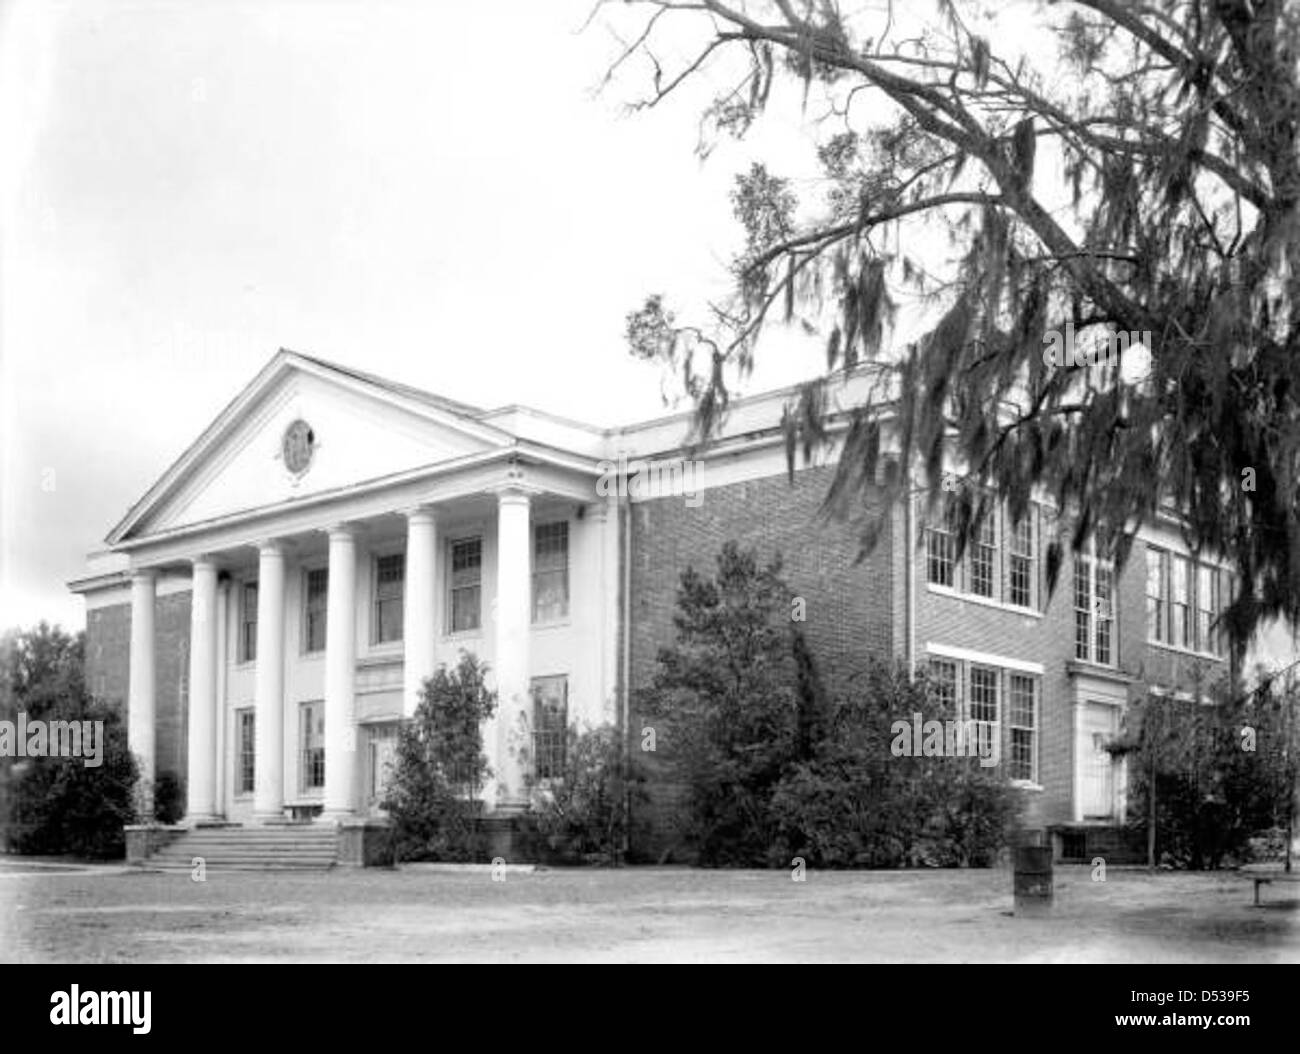 Monticello High School: Monticello, Florida Stock Photo